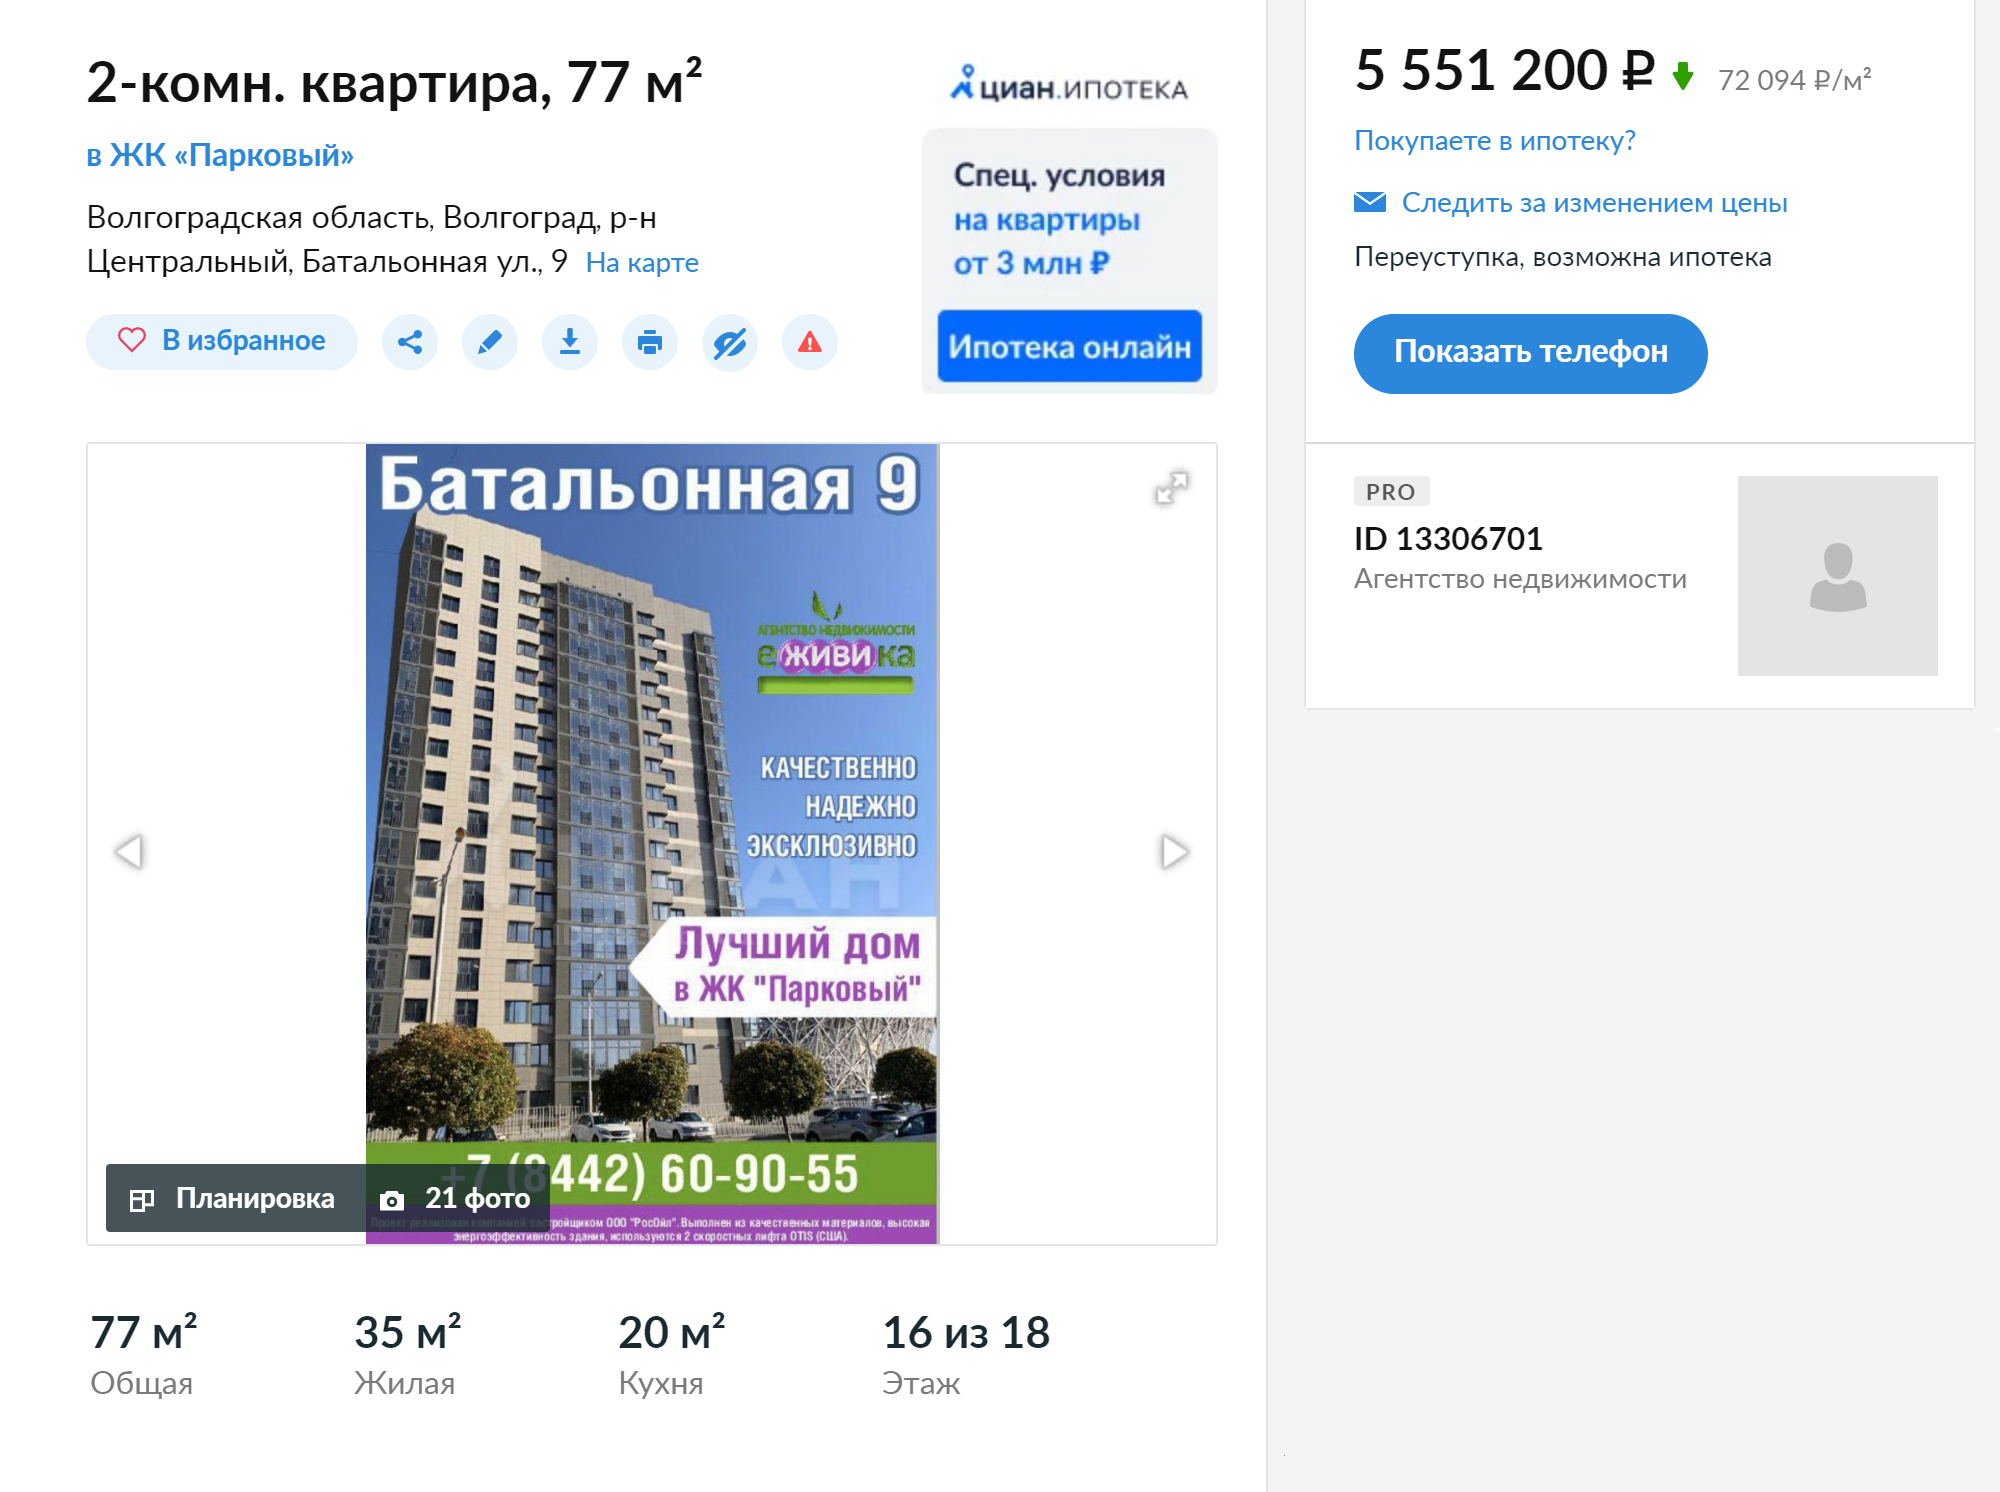 Двухкомнатная квартира в новом доме в Центральном районе с видом на стадион «Волгоград-Арена» — 5,5 млн рублей. Это дорого для Волгограда